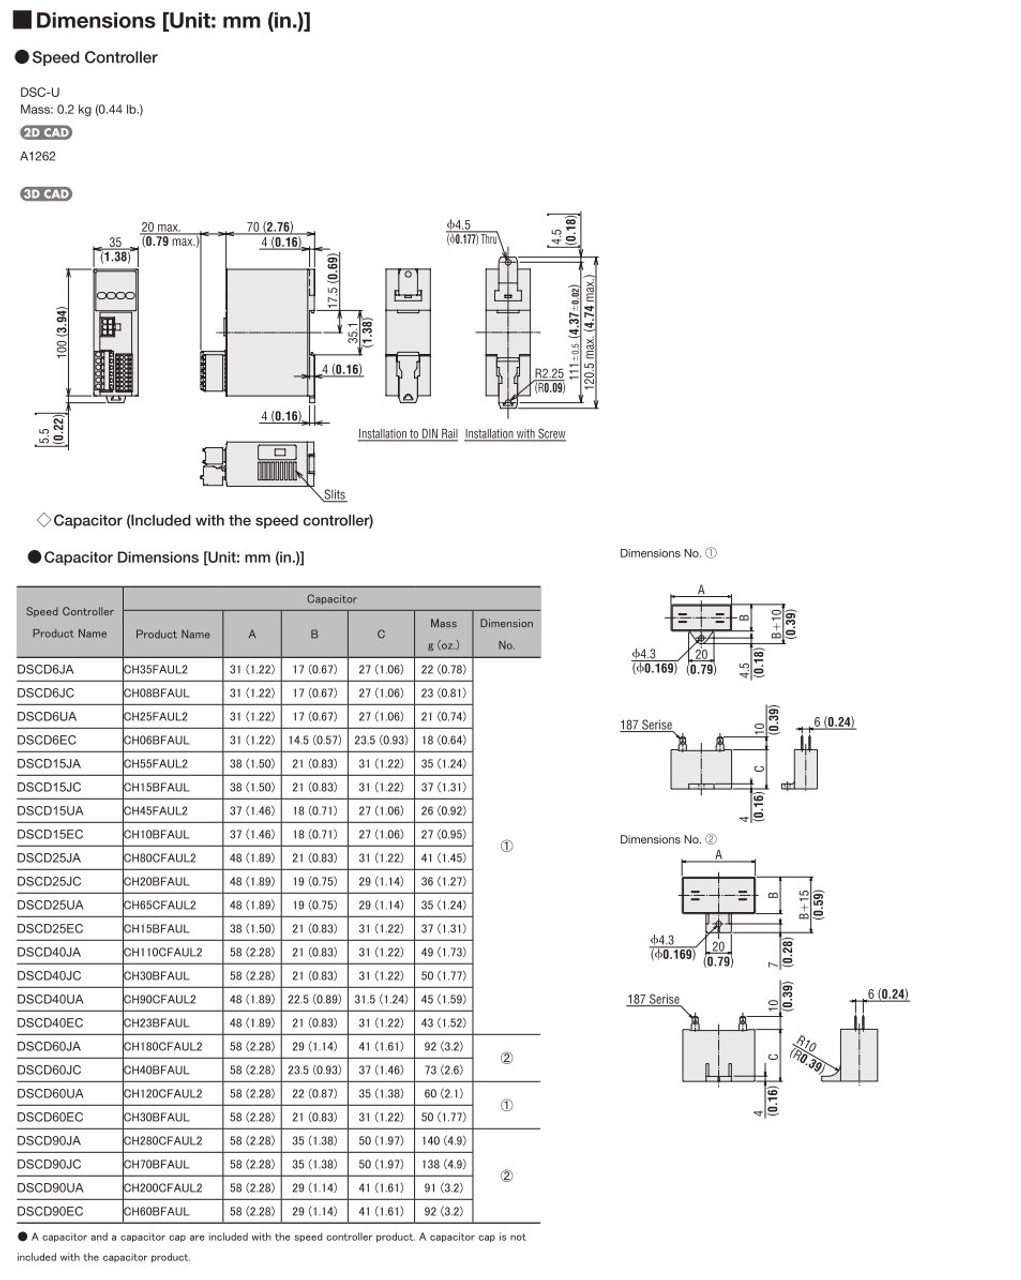 SCM315EC-25 / DSCD15EC - Dimensions